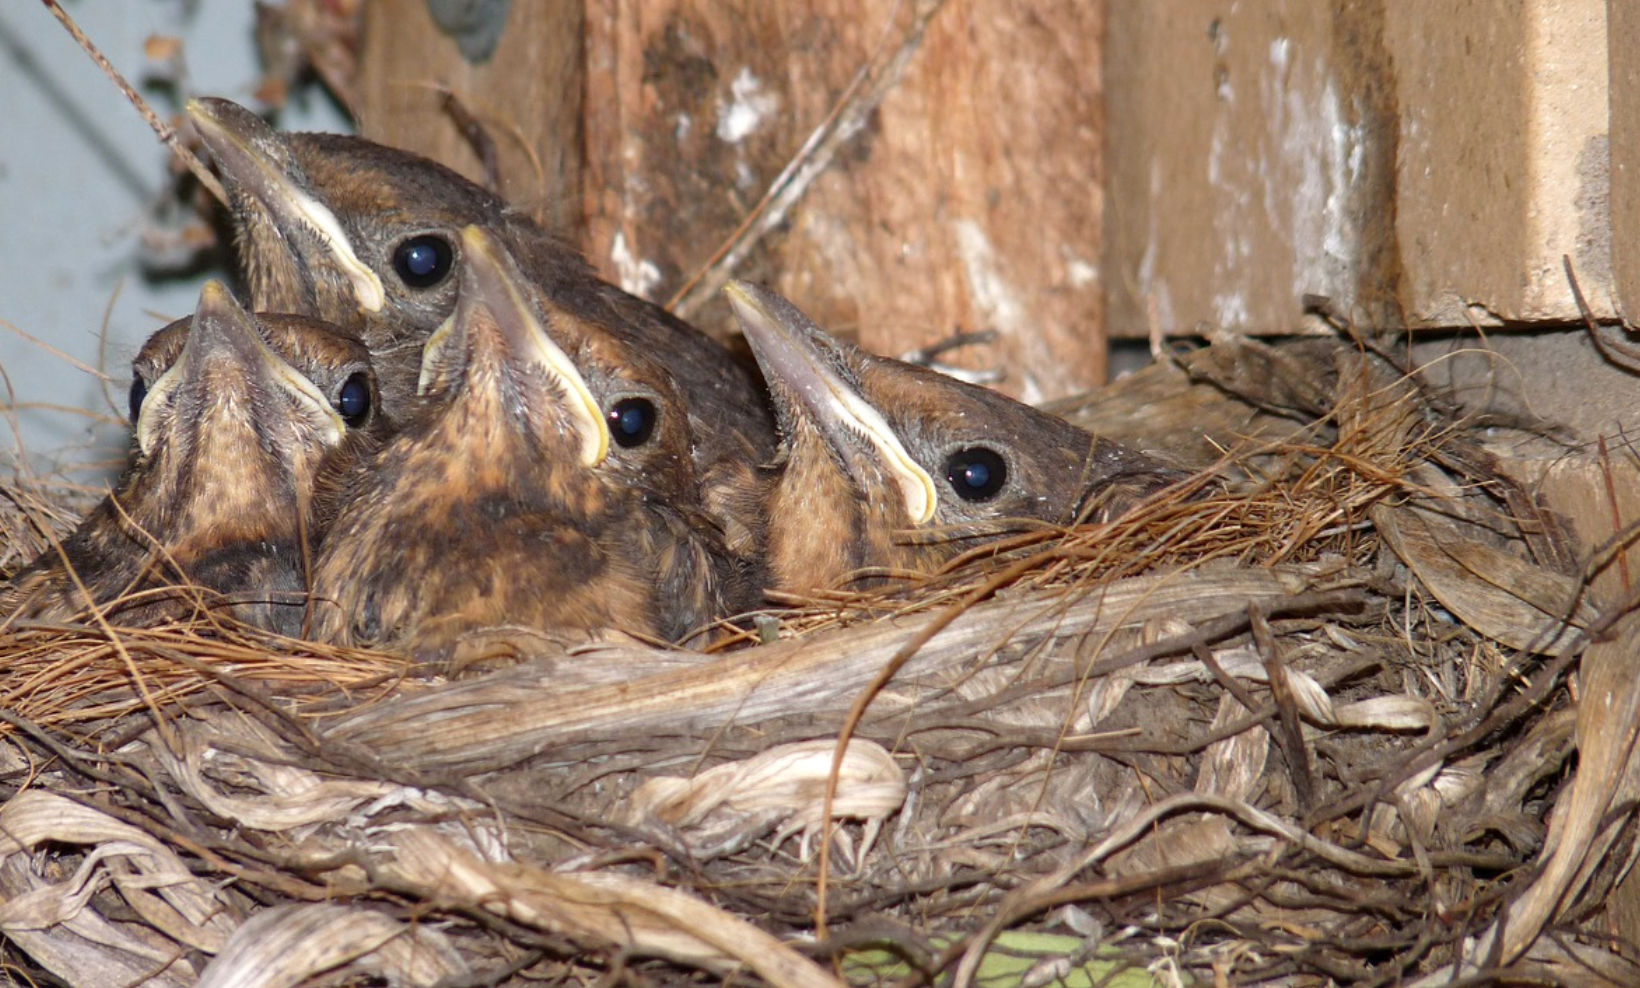 Regular nesting residents.